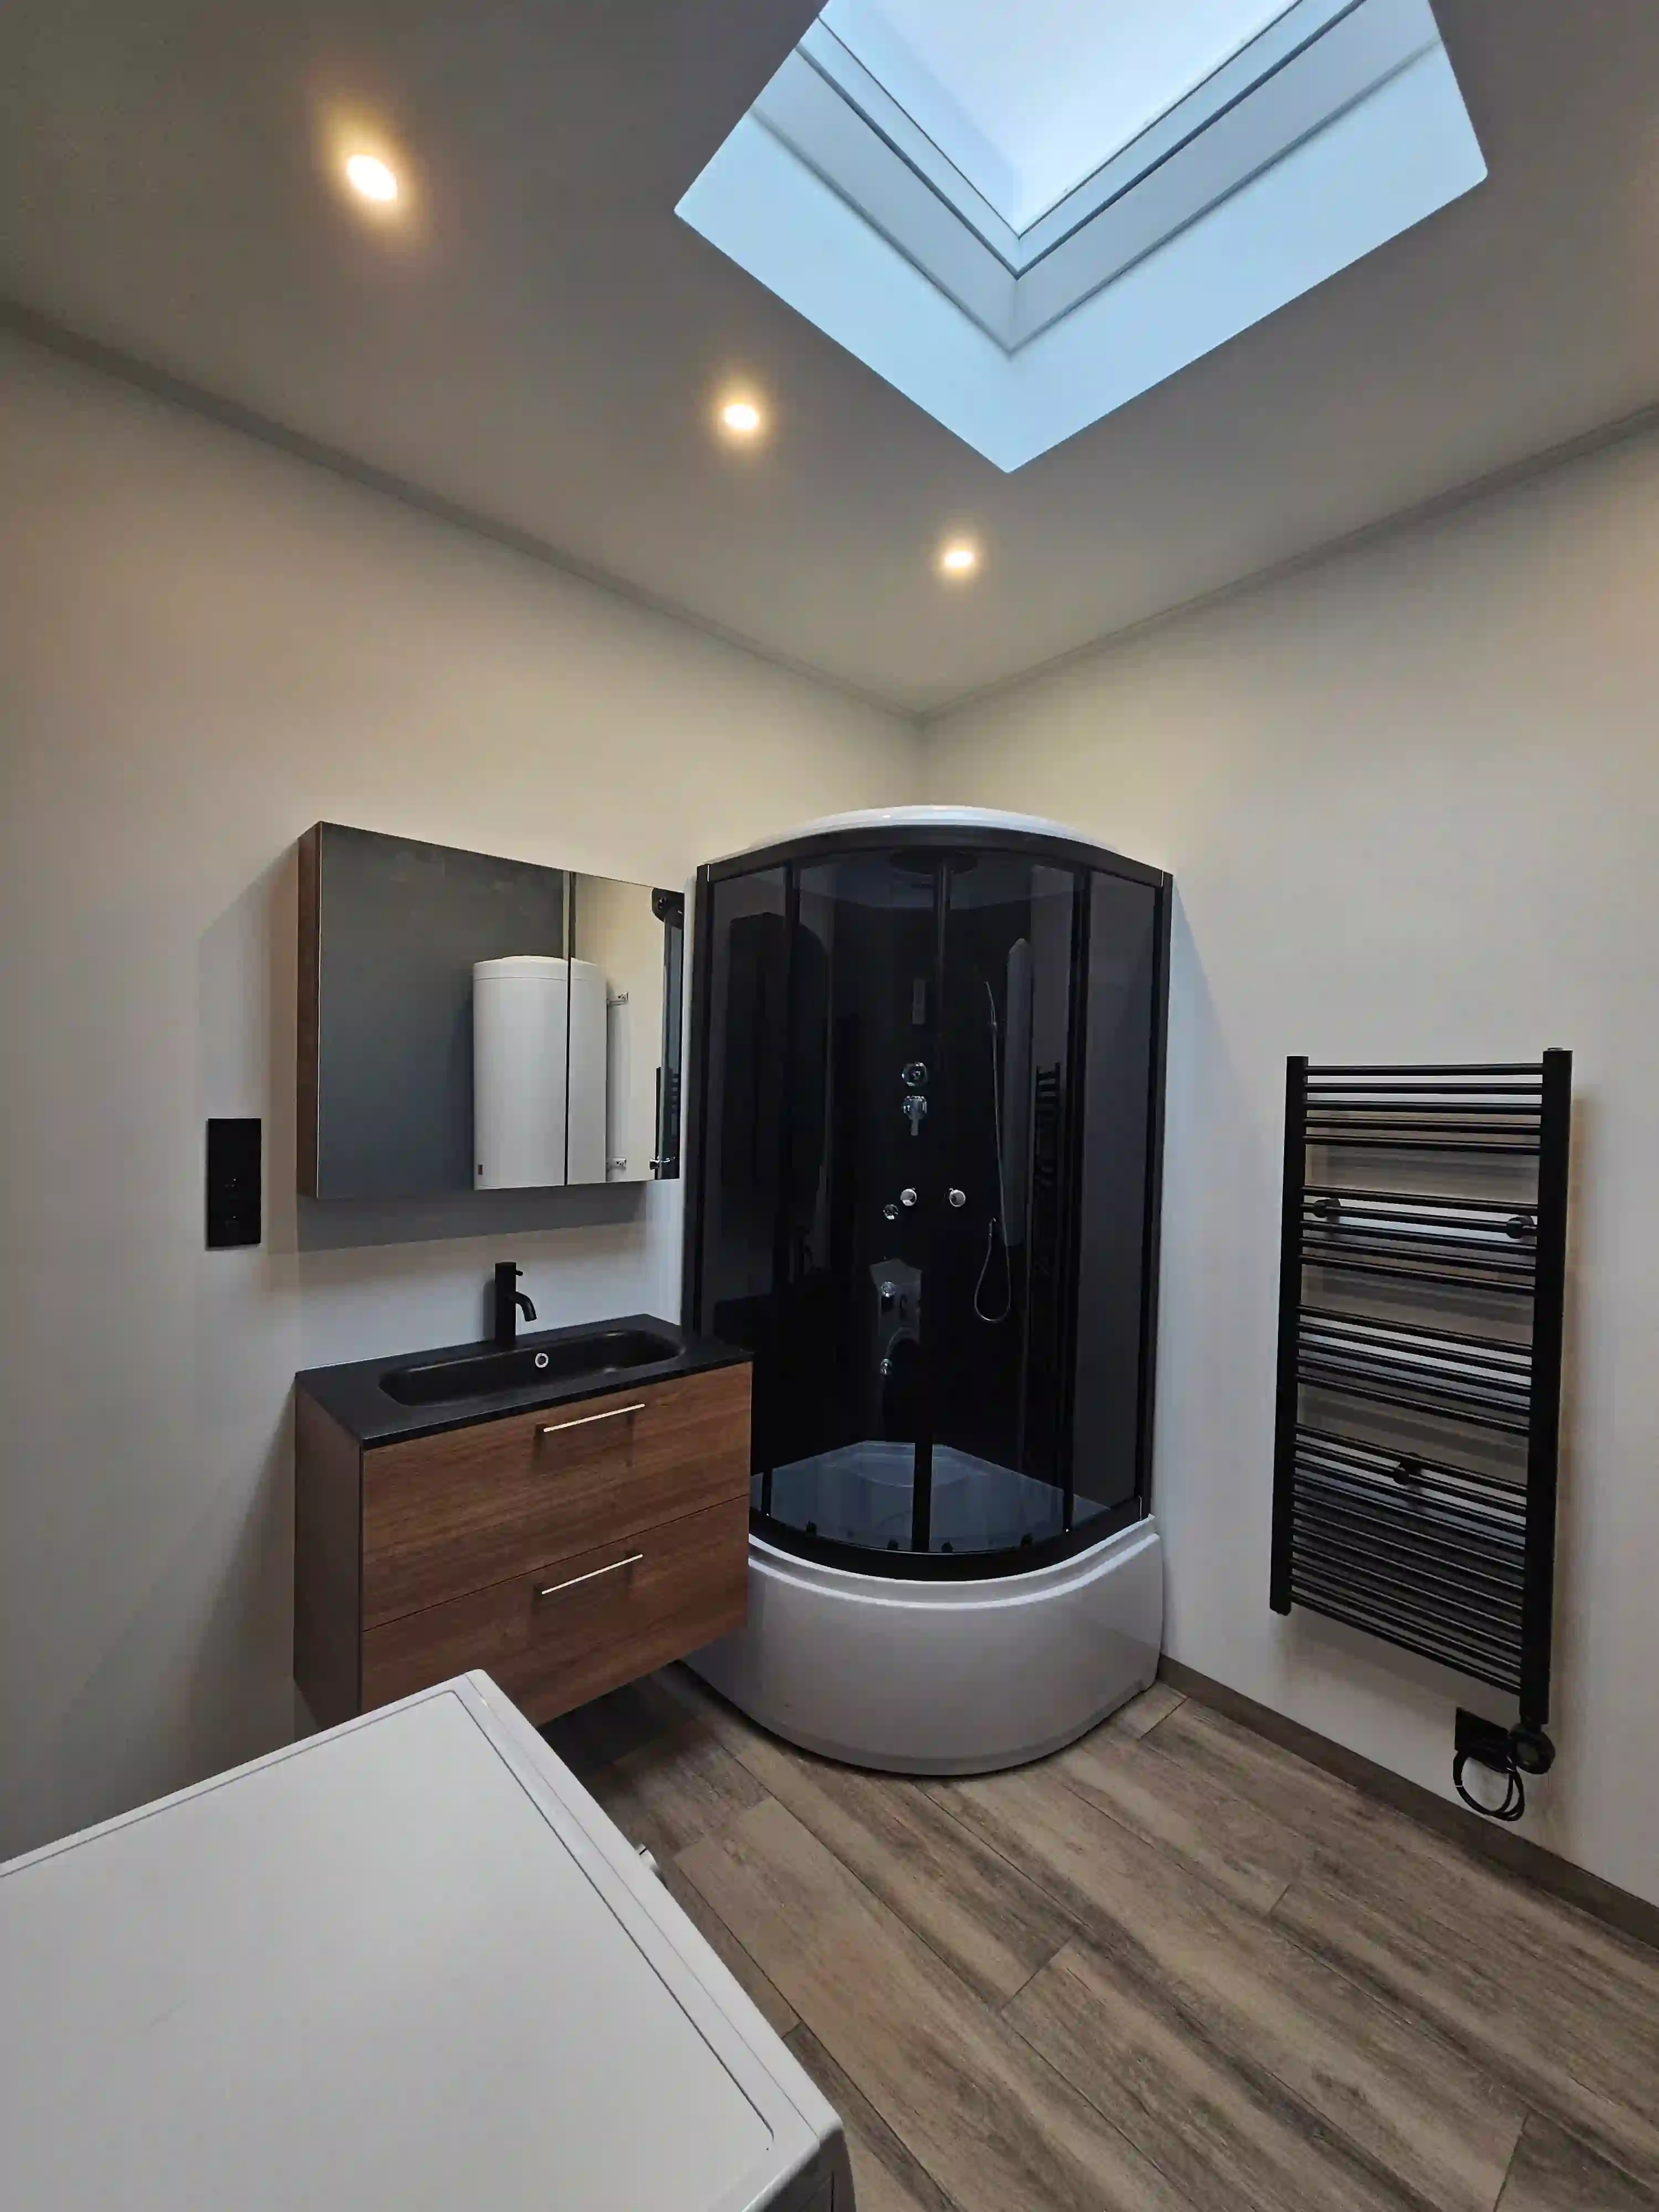 Afgewerkte badkamer met douche, meubel, radiator en spots